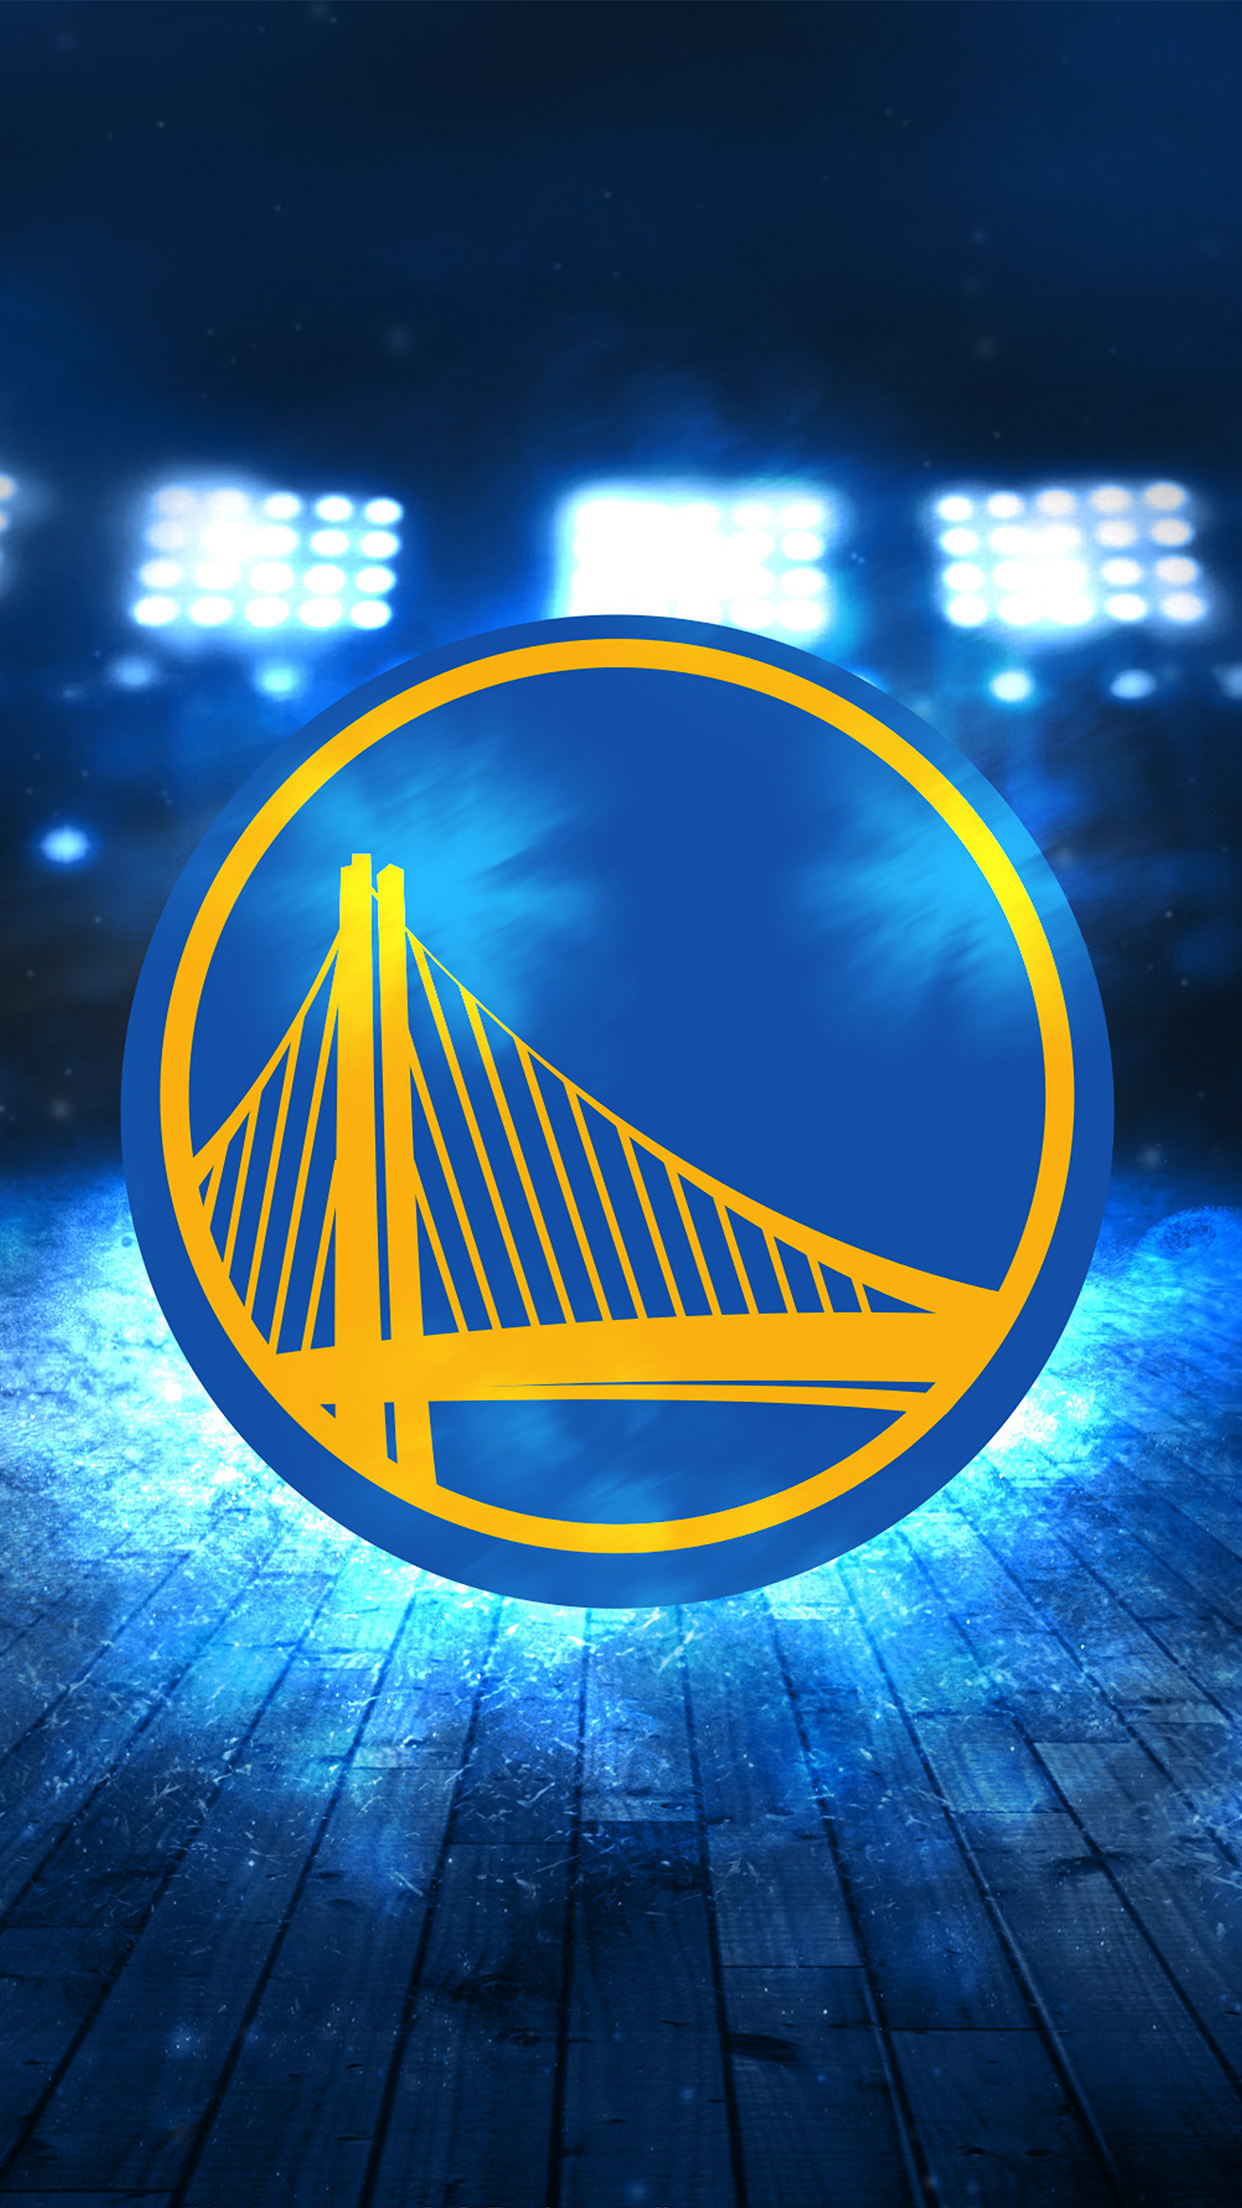 Golden State Warriors Home Logo - HD Wallpaper 